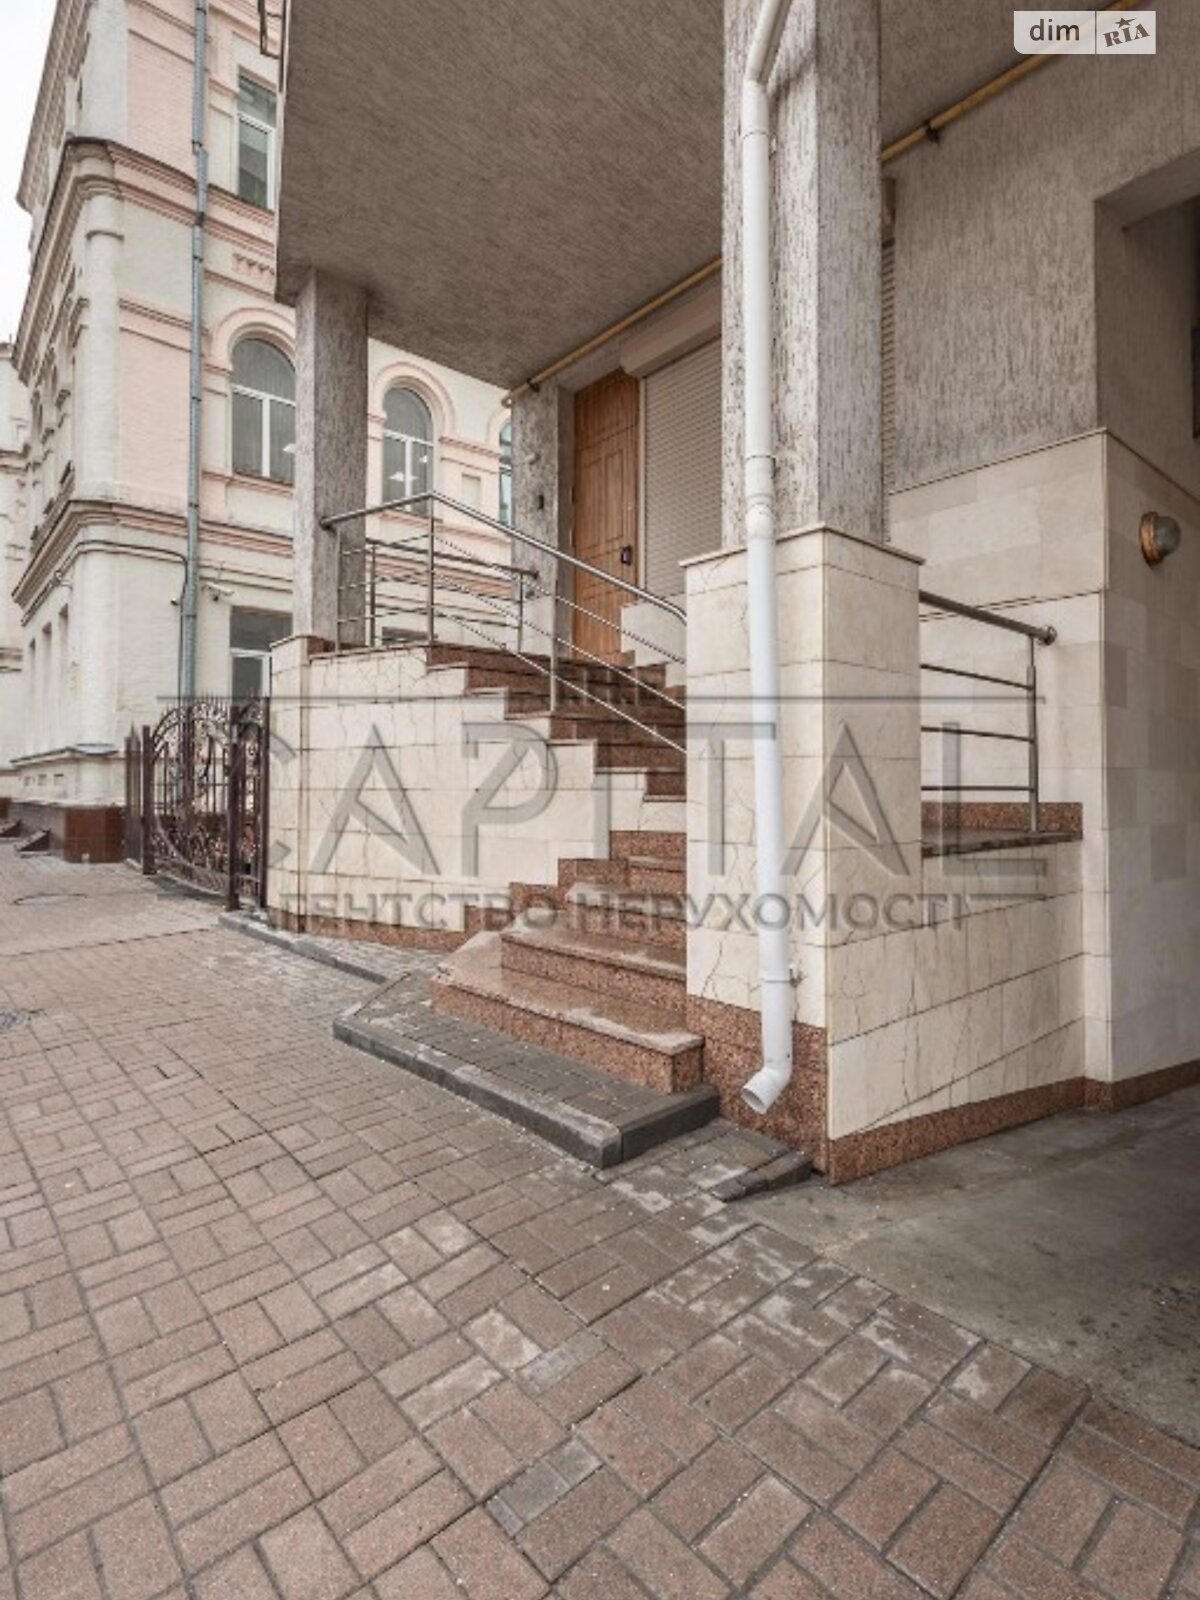 Аренда офисного помещения в Киеве, Бутышев (Иванова) переулок, помещений - 4, этаж - 1 фото 1